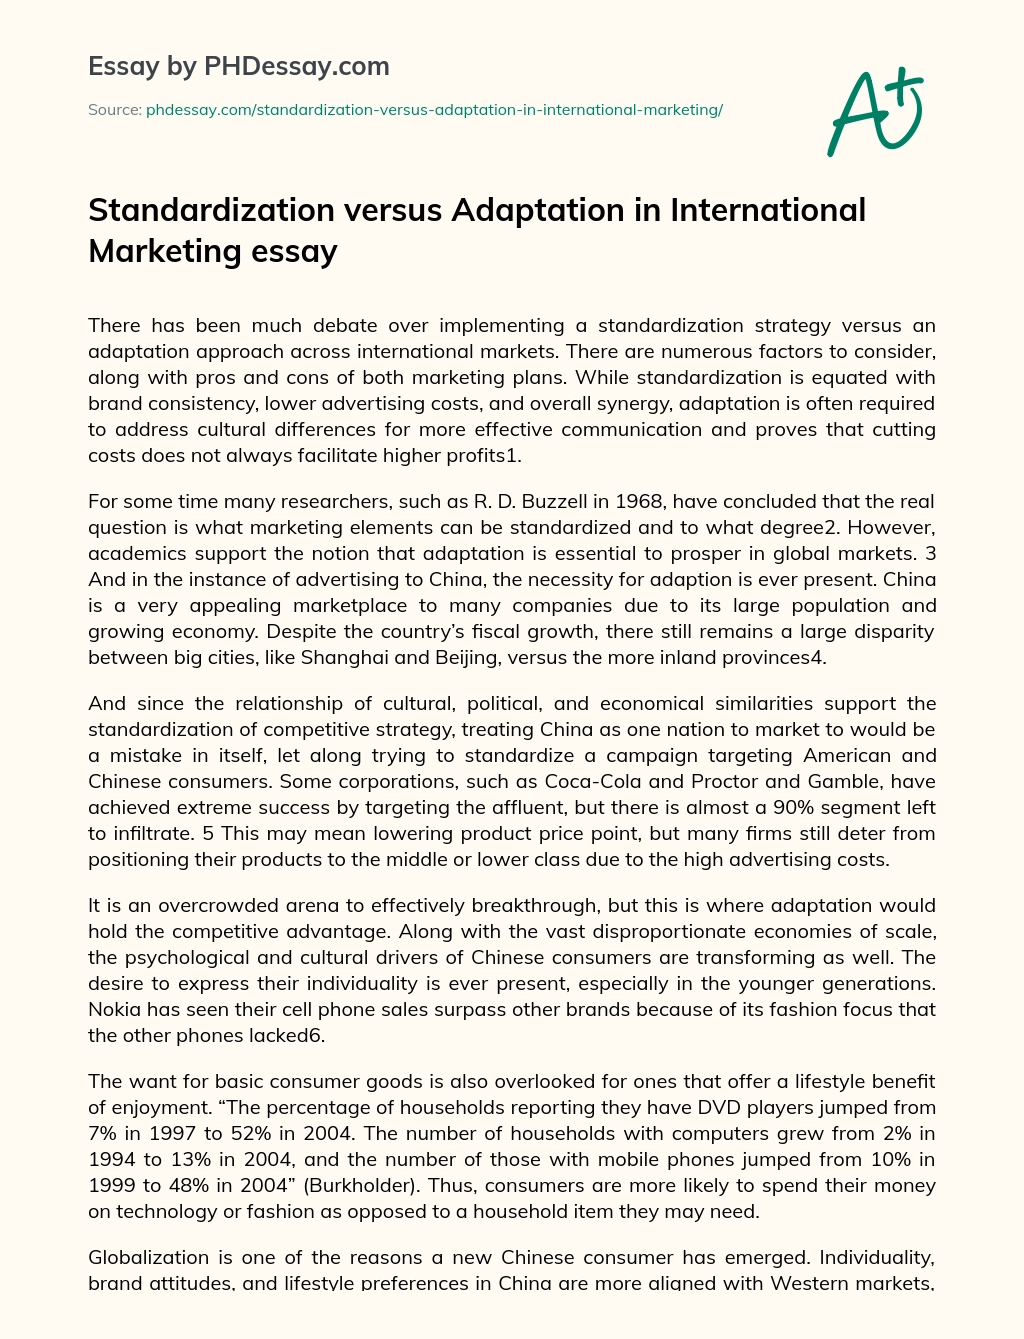 Standardization versus Adaptation in International Marketing essay essay